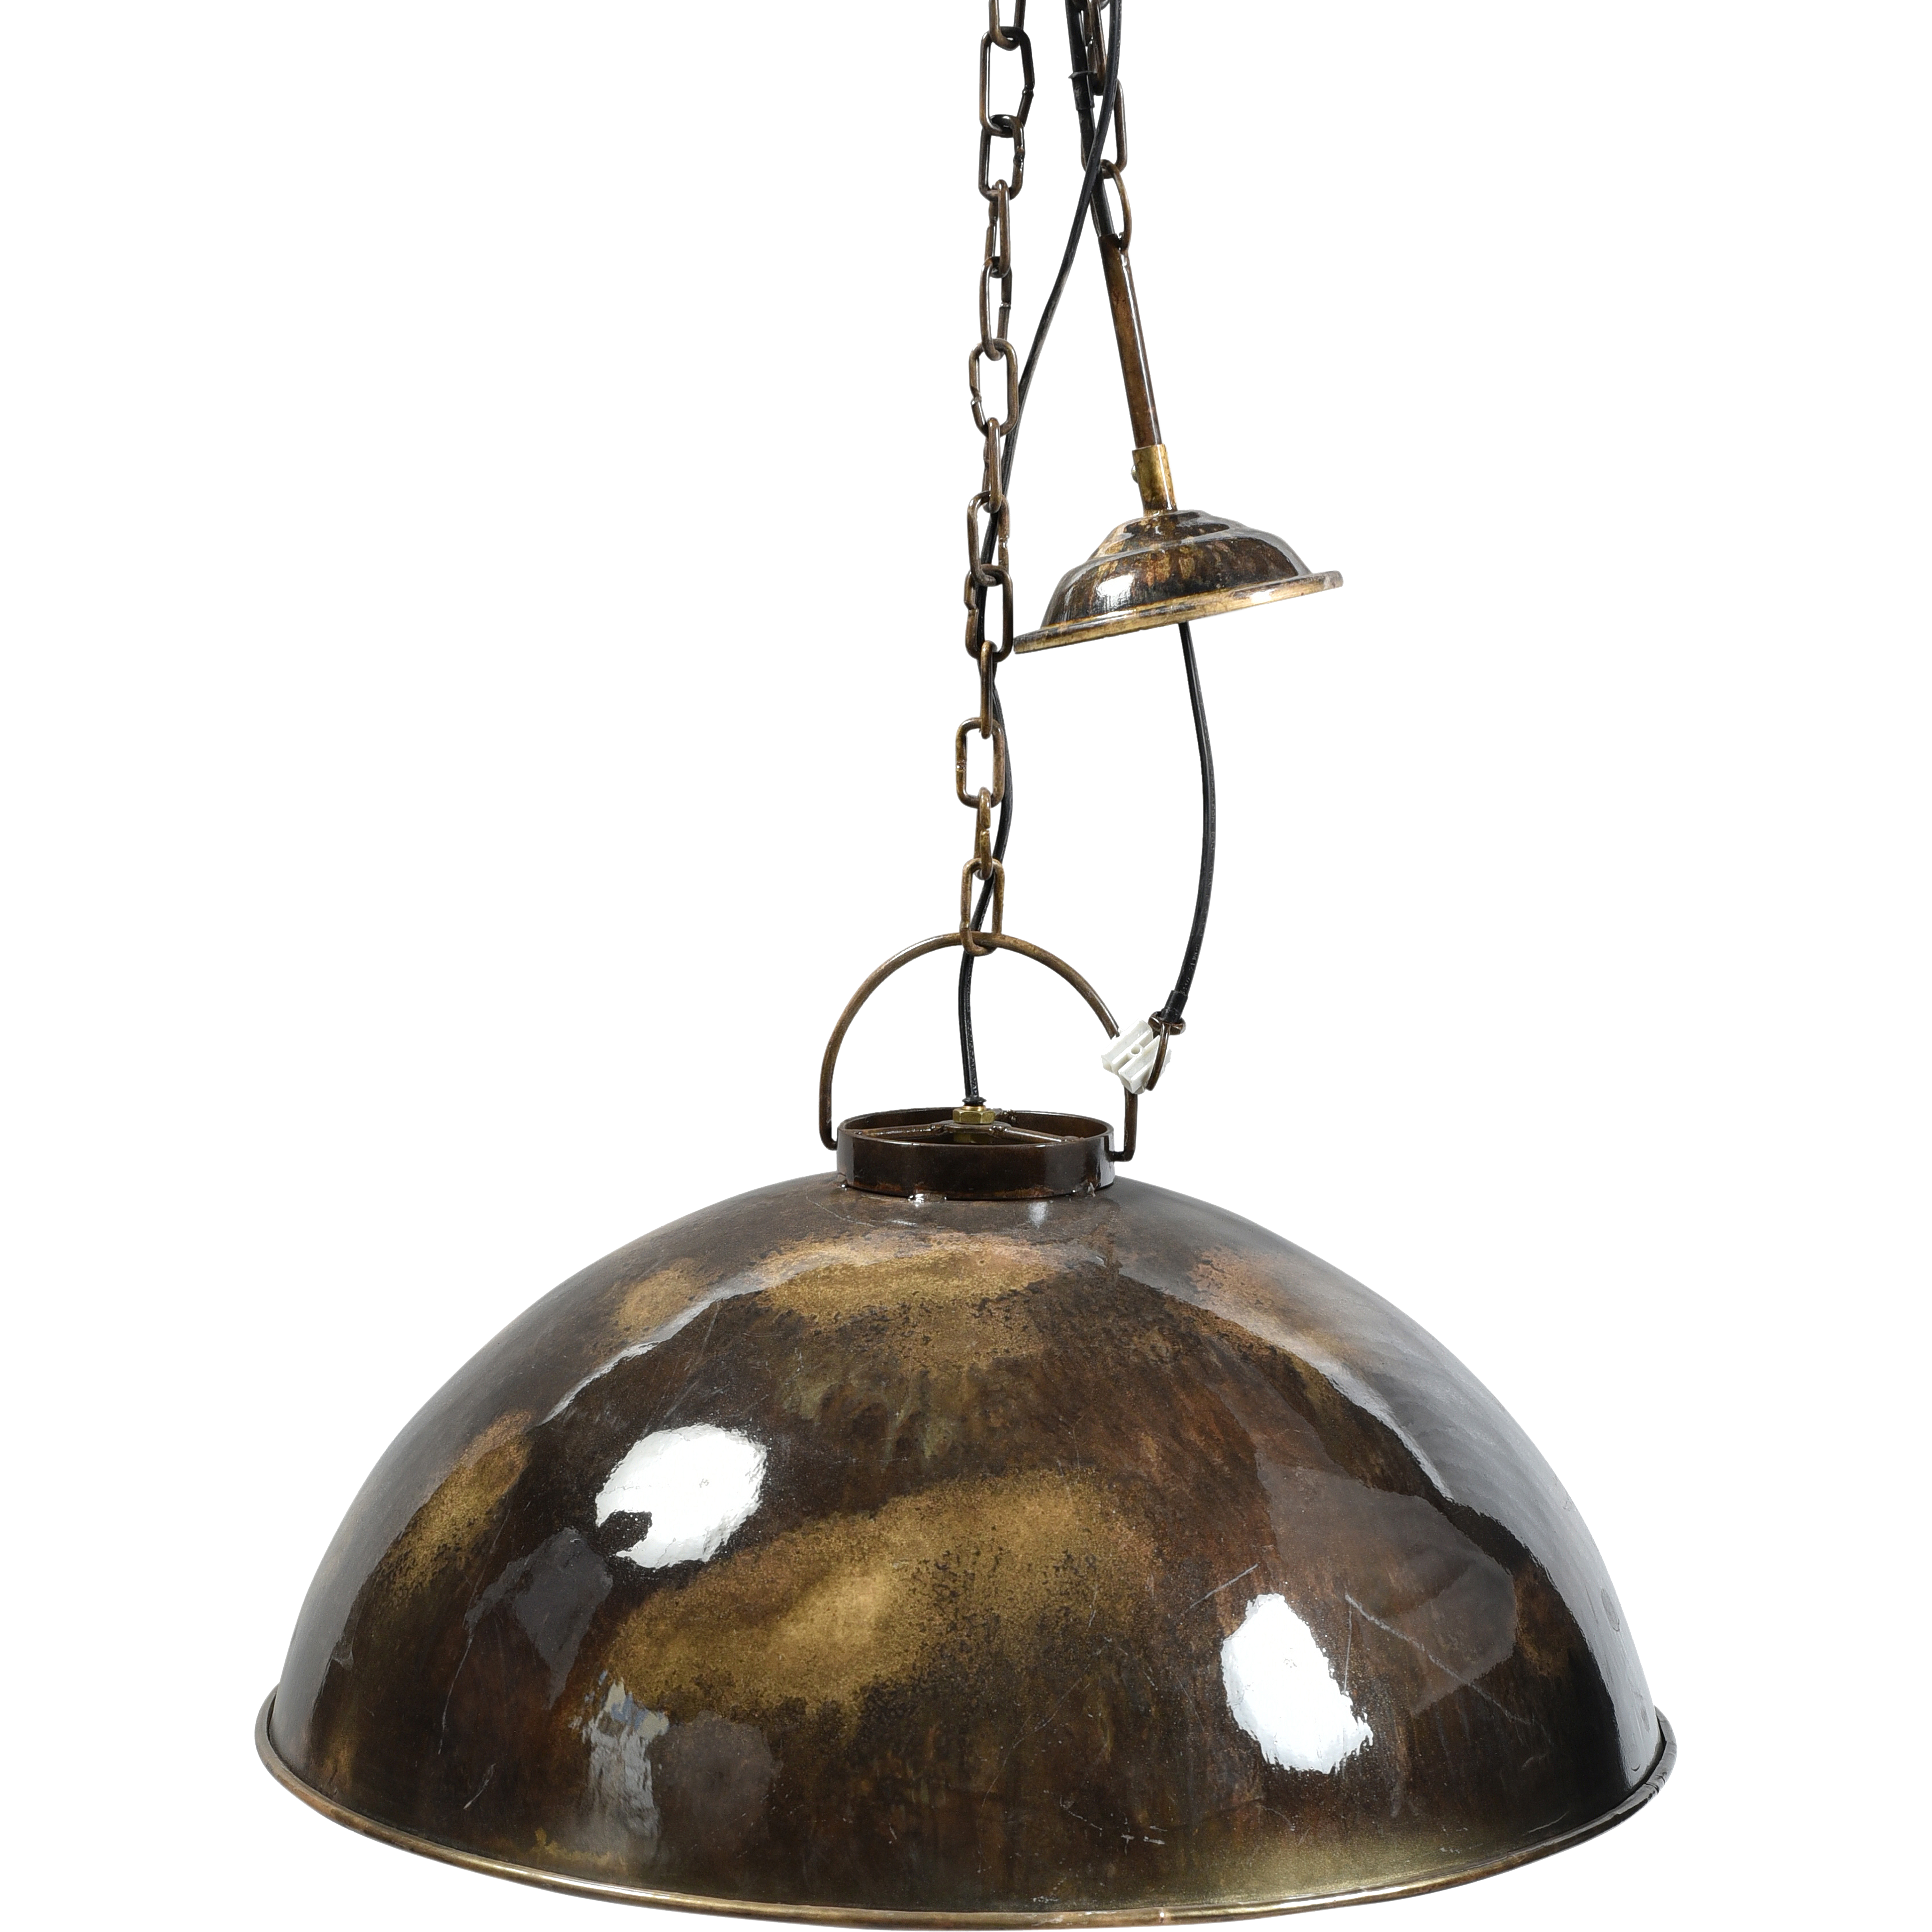 5: Trademark Living Loftlampe i fabriksstil - metal marmorering